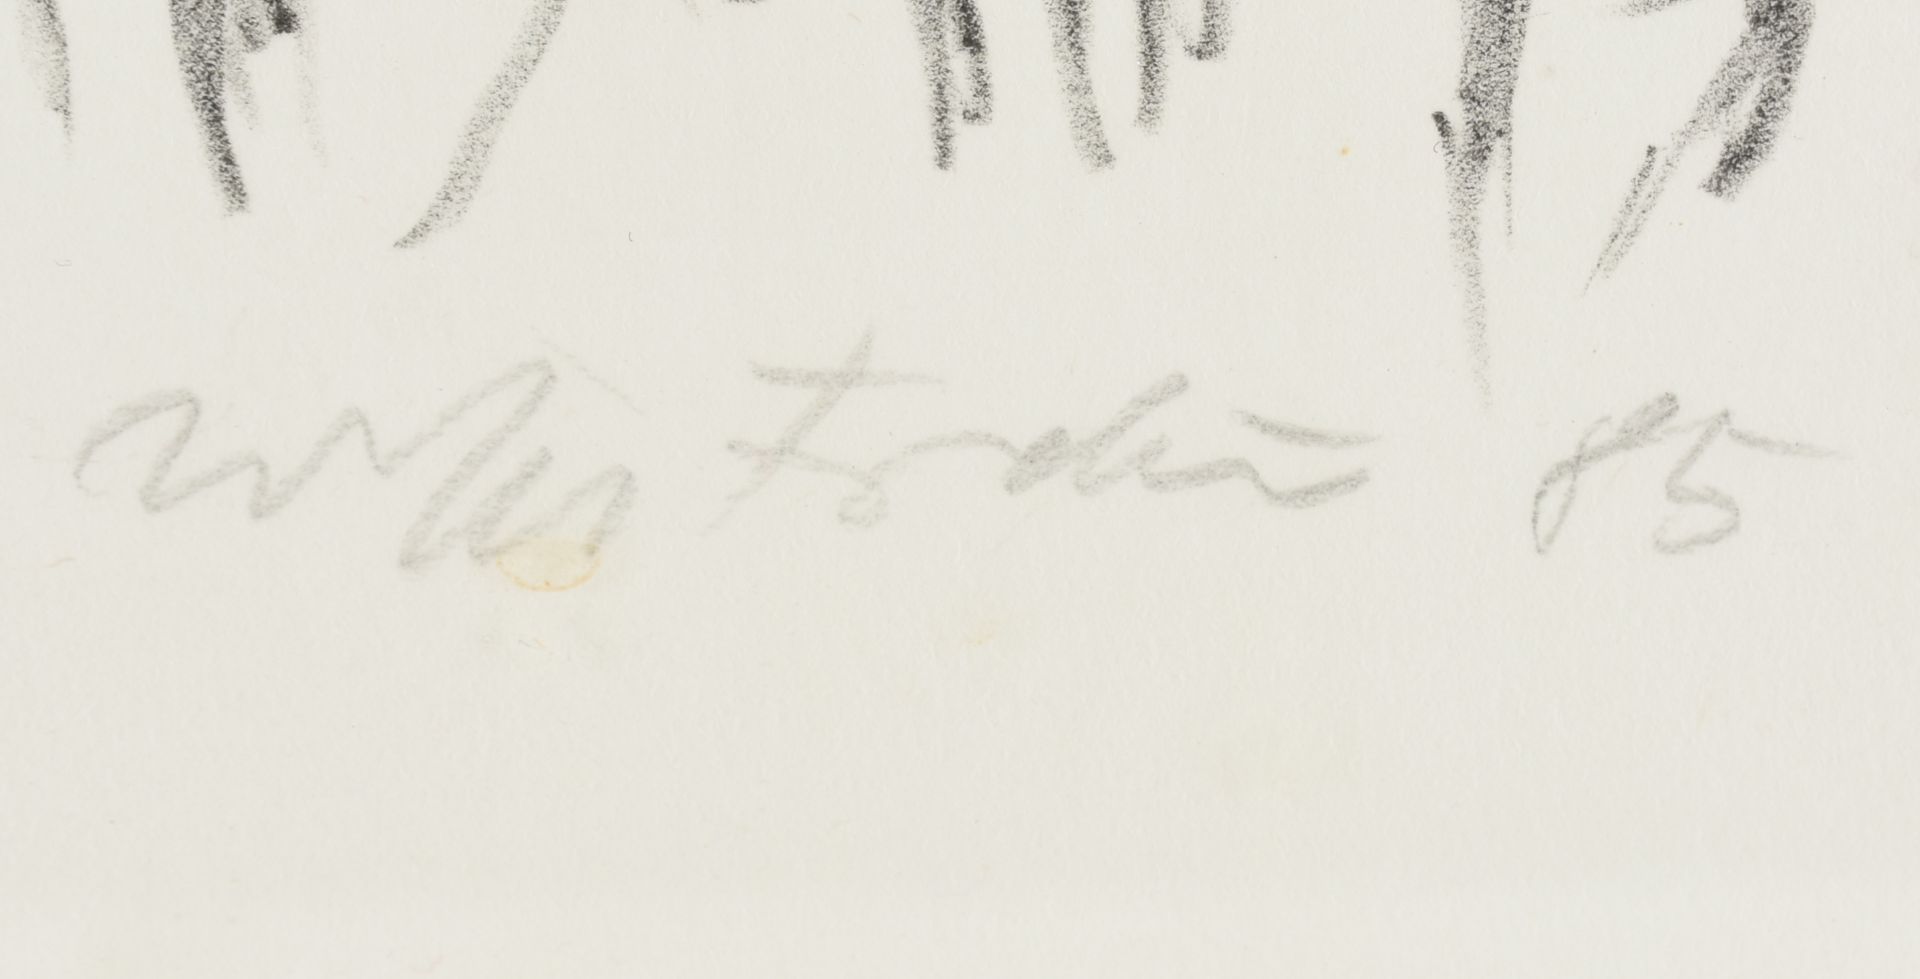 Undeutlich signiert Lithografie auf Bütten, "Casanova, Die Schauspieltruppe, II", unter dem Druck in - Bild 4 aus 4